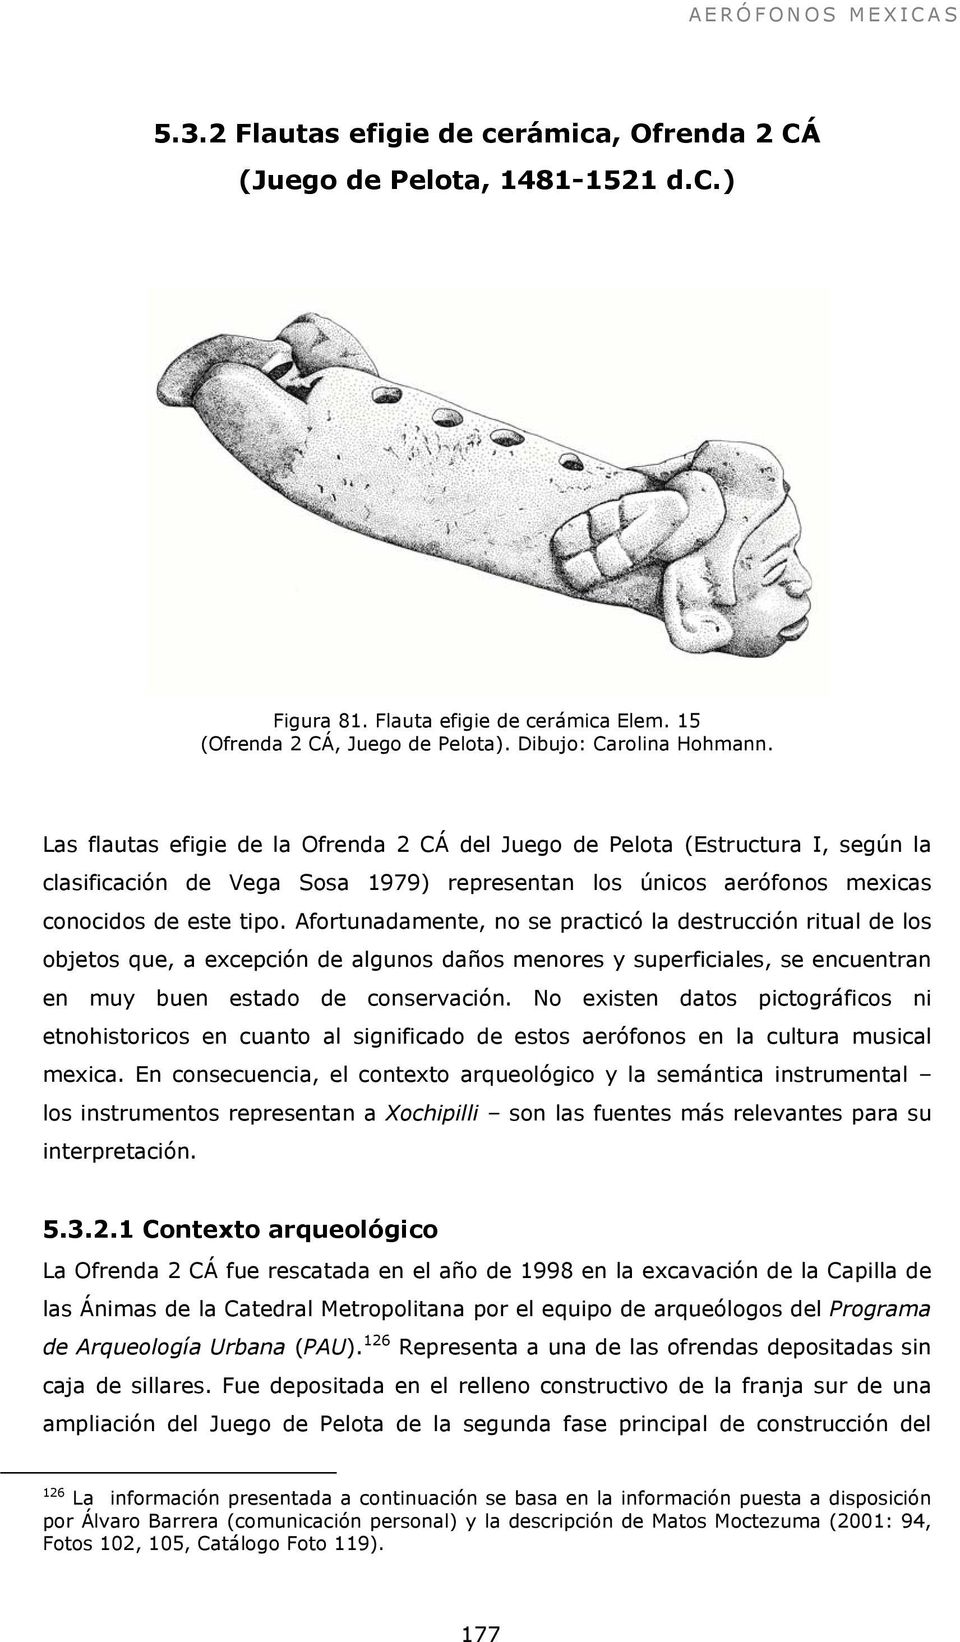 Las flautas efigie de la Ofrenda 2 CÁ del Juego de Pelota (Estructura I, según la clasificación de Vega Sosa 1979) representan los únicos aerófonos mexicas conocidos de este tipo.